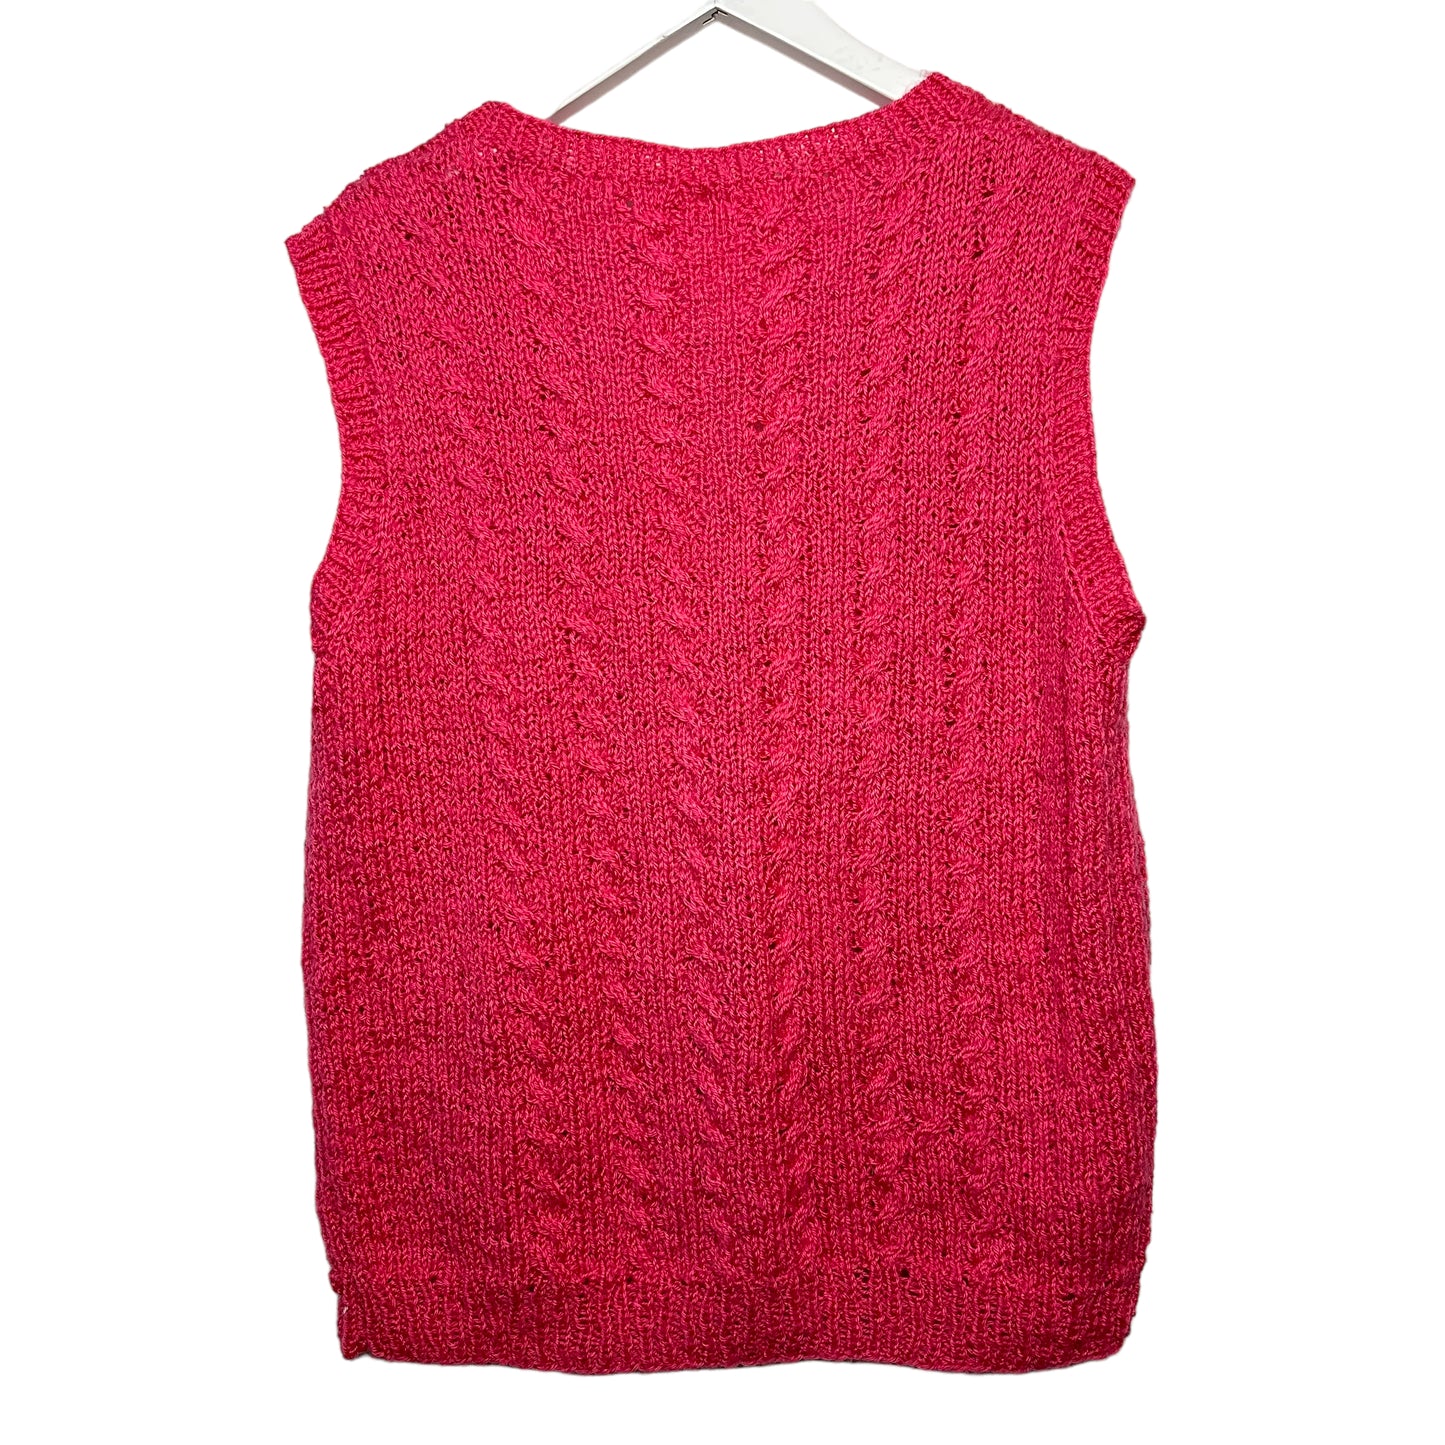 Hand Knit Handmade Pink Chunky Knit Sweater Vest V Neck